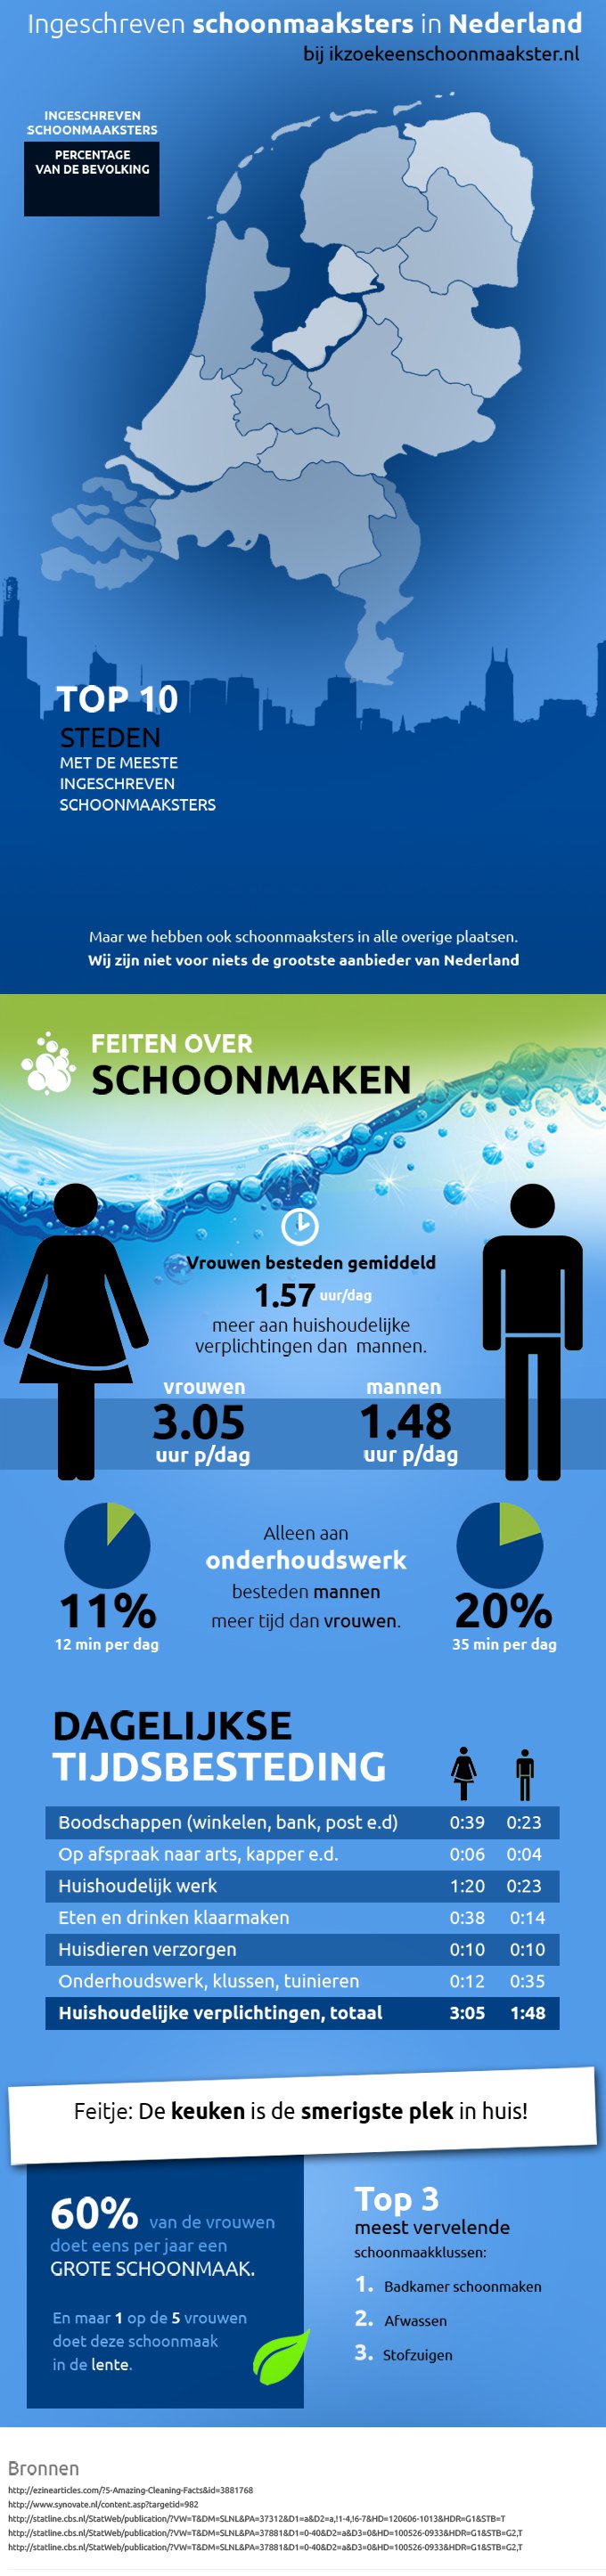 Schoonmaken Infographic - ikzoekeenschoonmaakster.nl